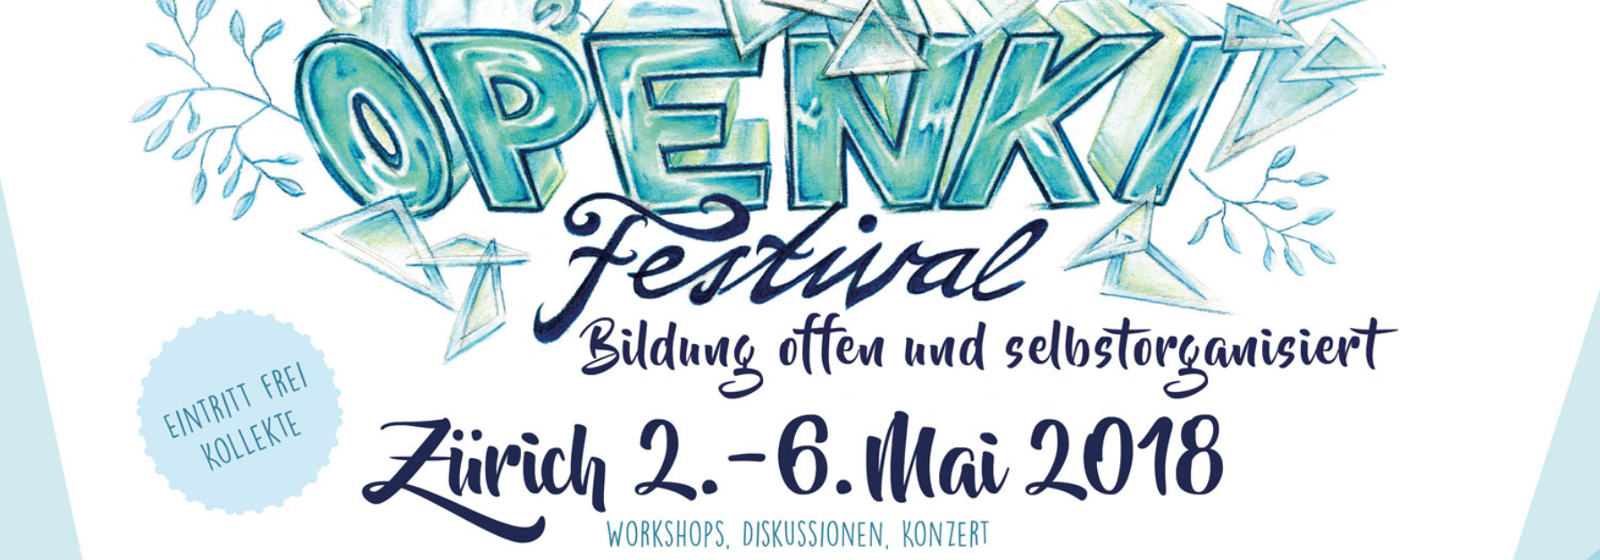 Openki Festival 2018